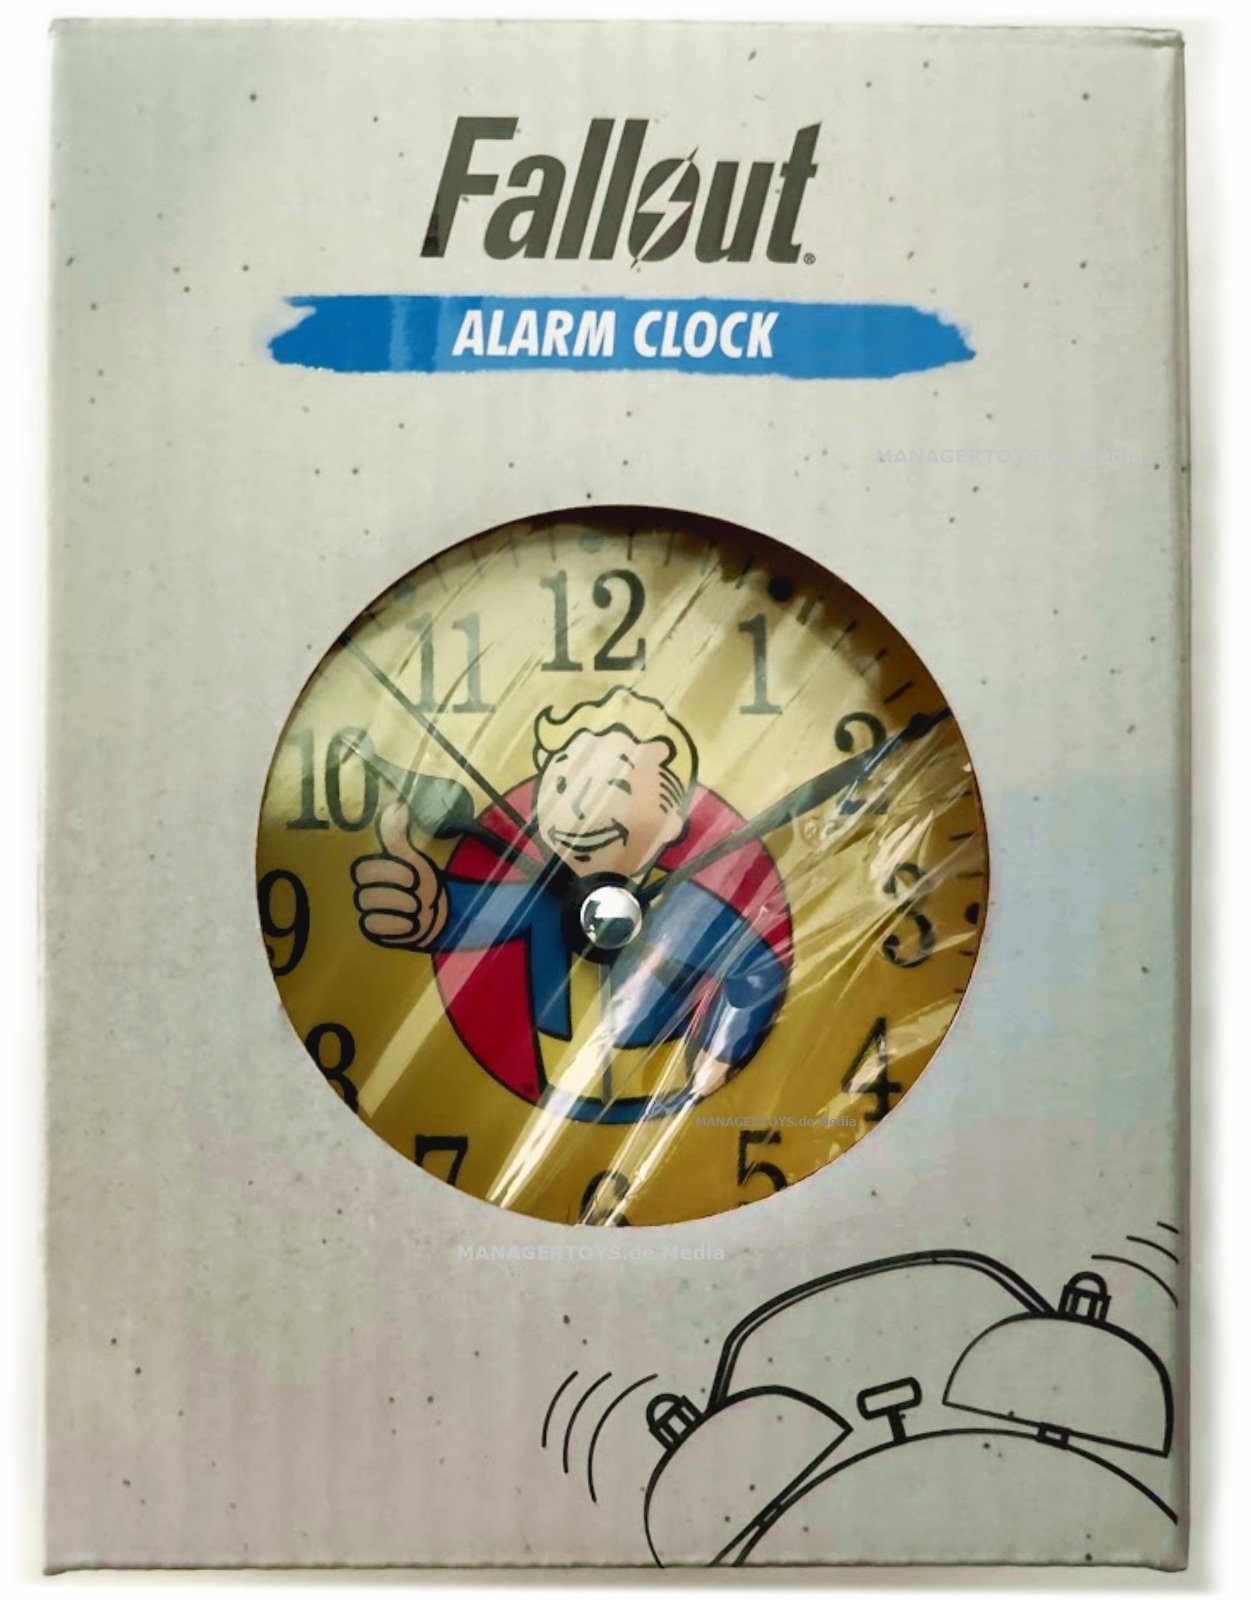 Alarm Clock official Vault Boy Metall Glockenwecker Limited Fallout Uhr Wecker GAYA